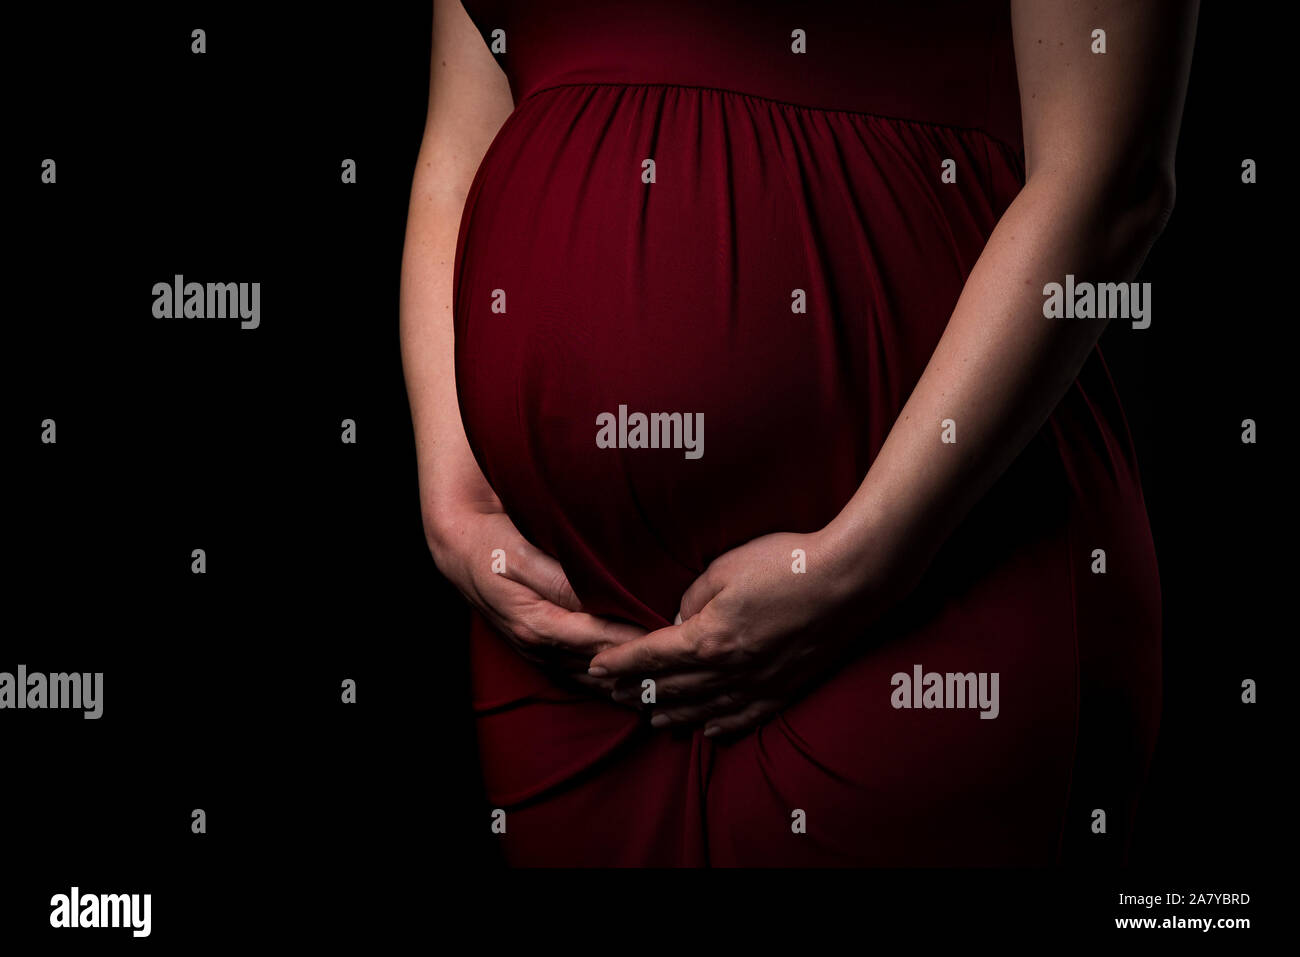 Schwangere Frau im roten Kleid Bauch Holding auf schwarzem Hintergrund. Portrait von aufgeregt, fröhlich, blond, junge Frau in der Schwangerschaft studio schießen. Konzept der mat Stockfoto